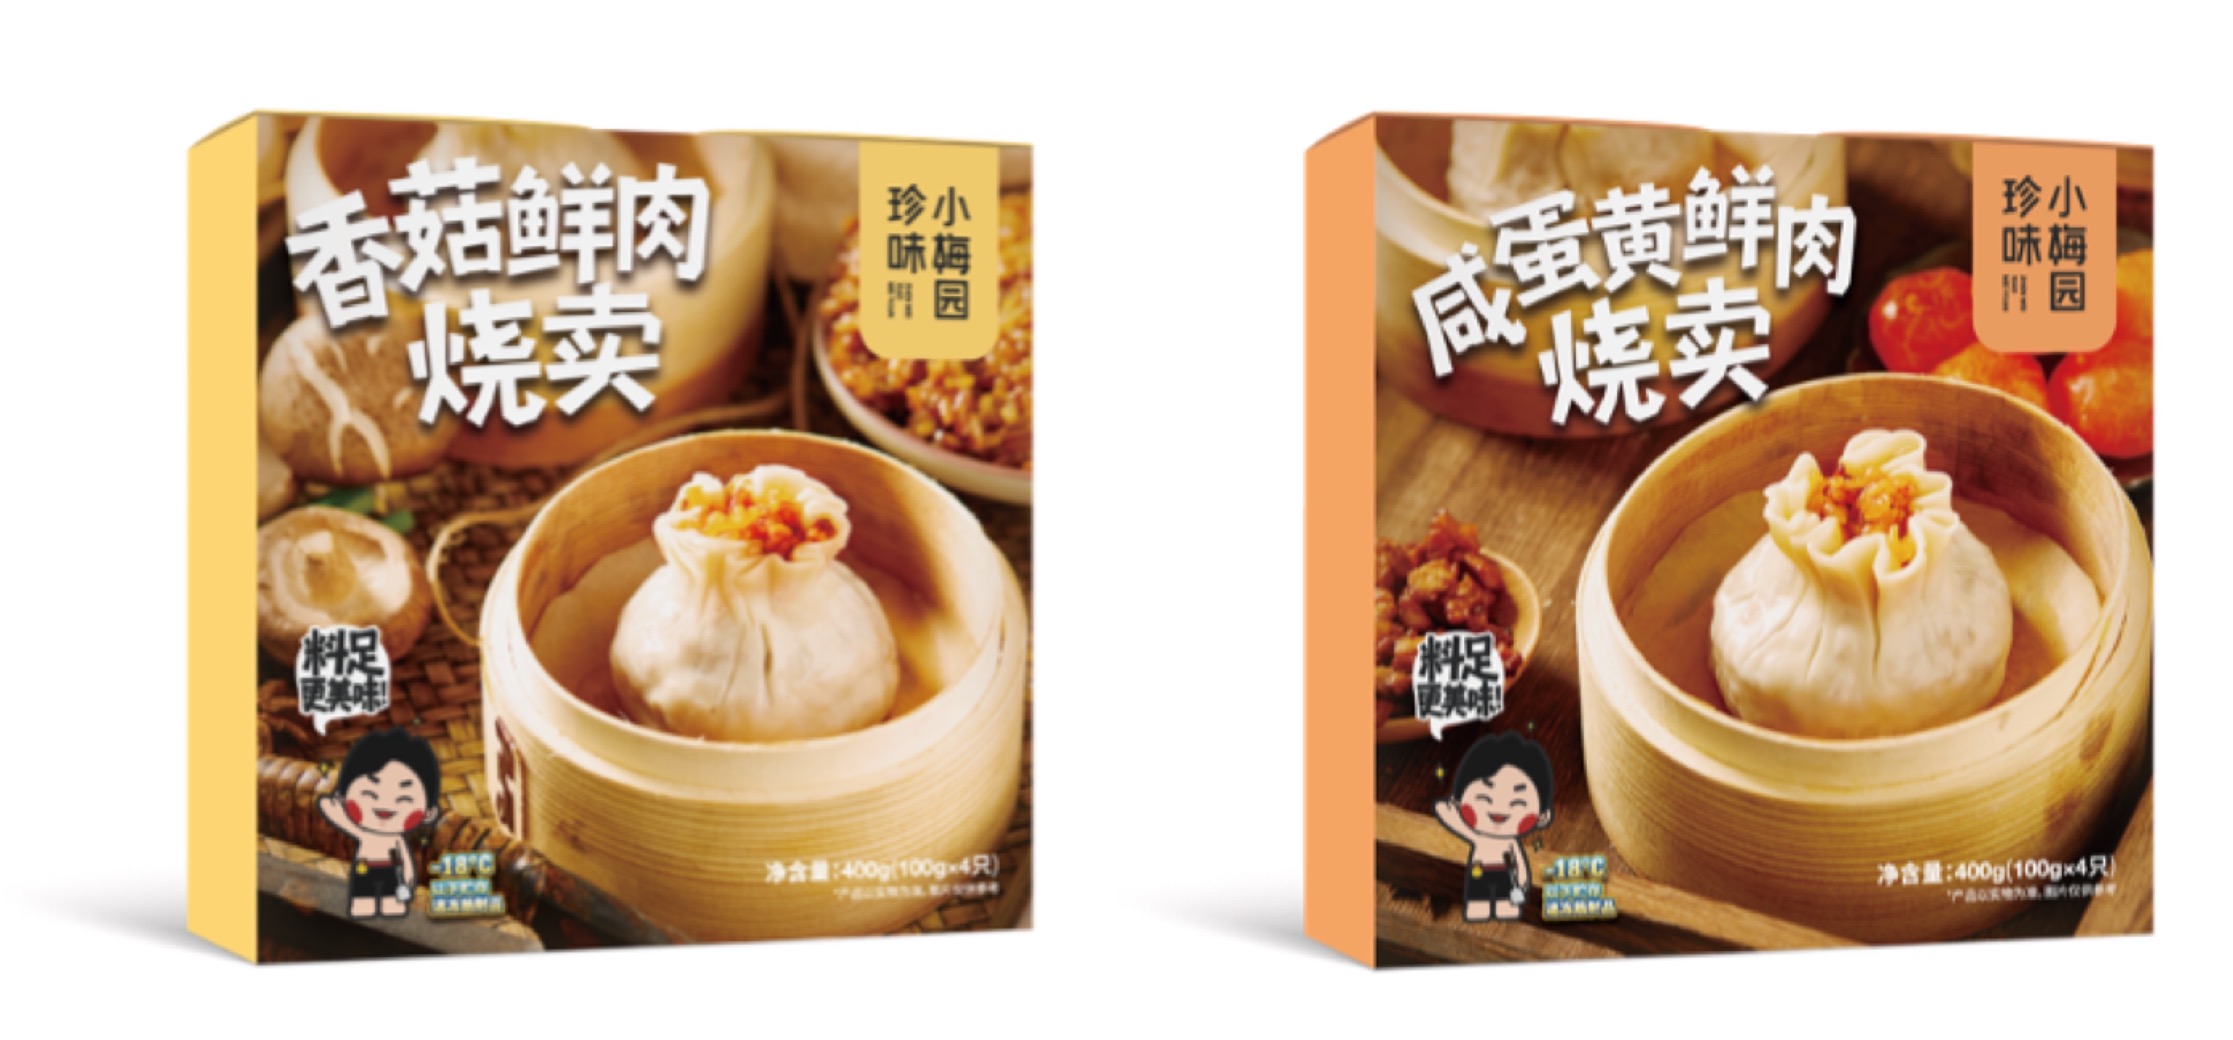 新中式预制菜品牌「珍味小梅园」B轮与B+轮融资累计金额过亿元，B+轮由百度风投领投